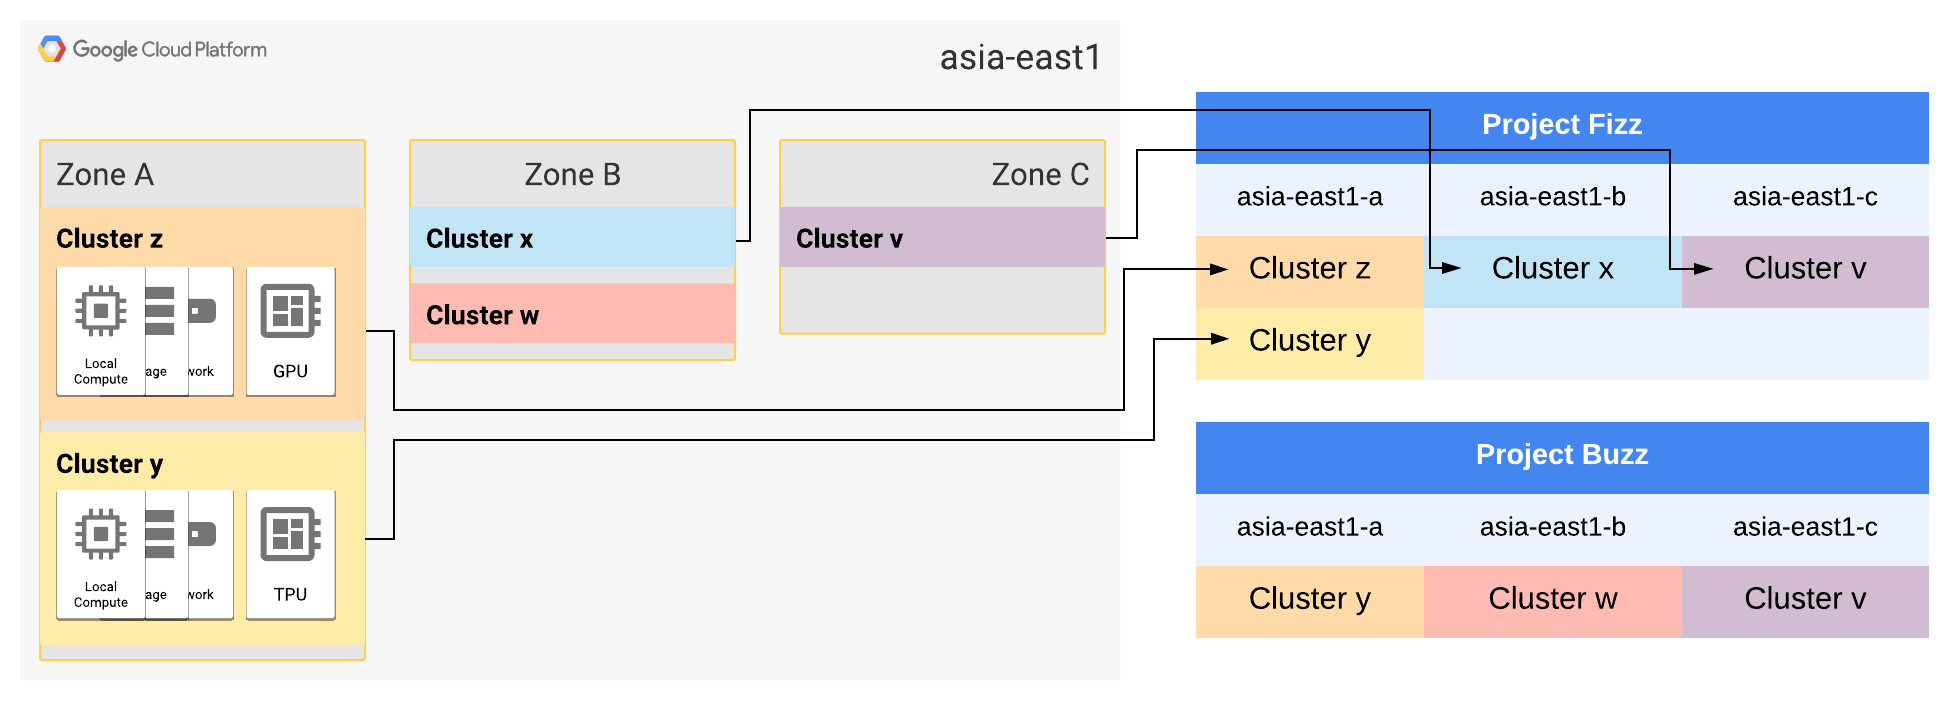 Die asia-east1-Zonen A und B wurden jeweils auf zwei Cluster erweitert.